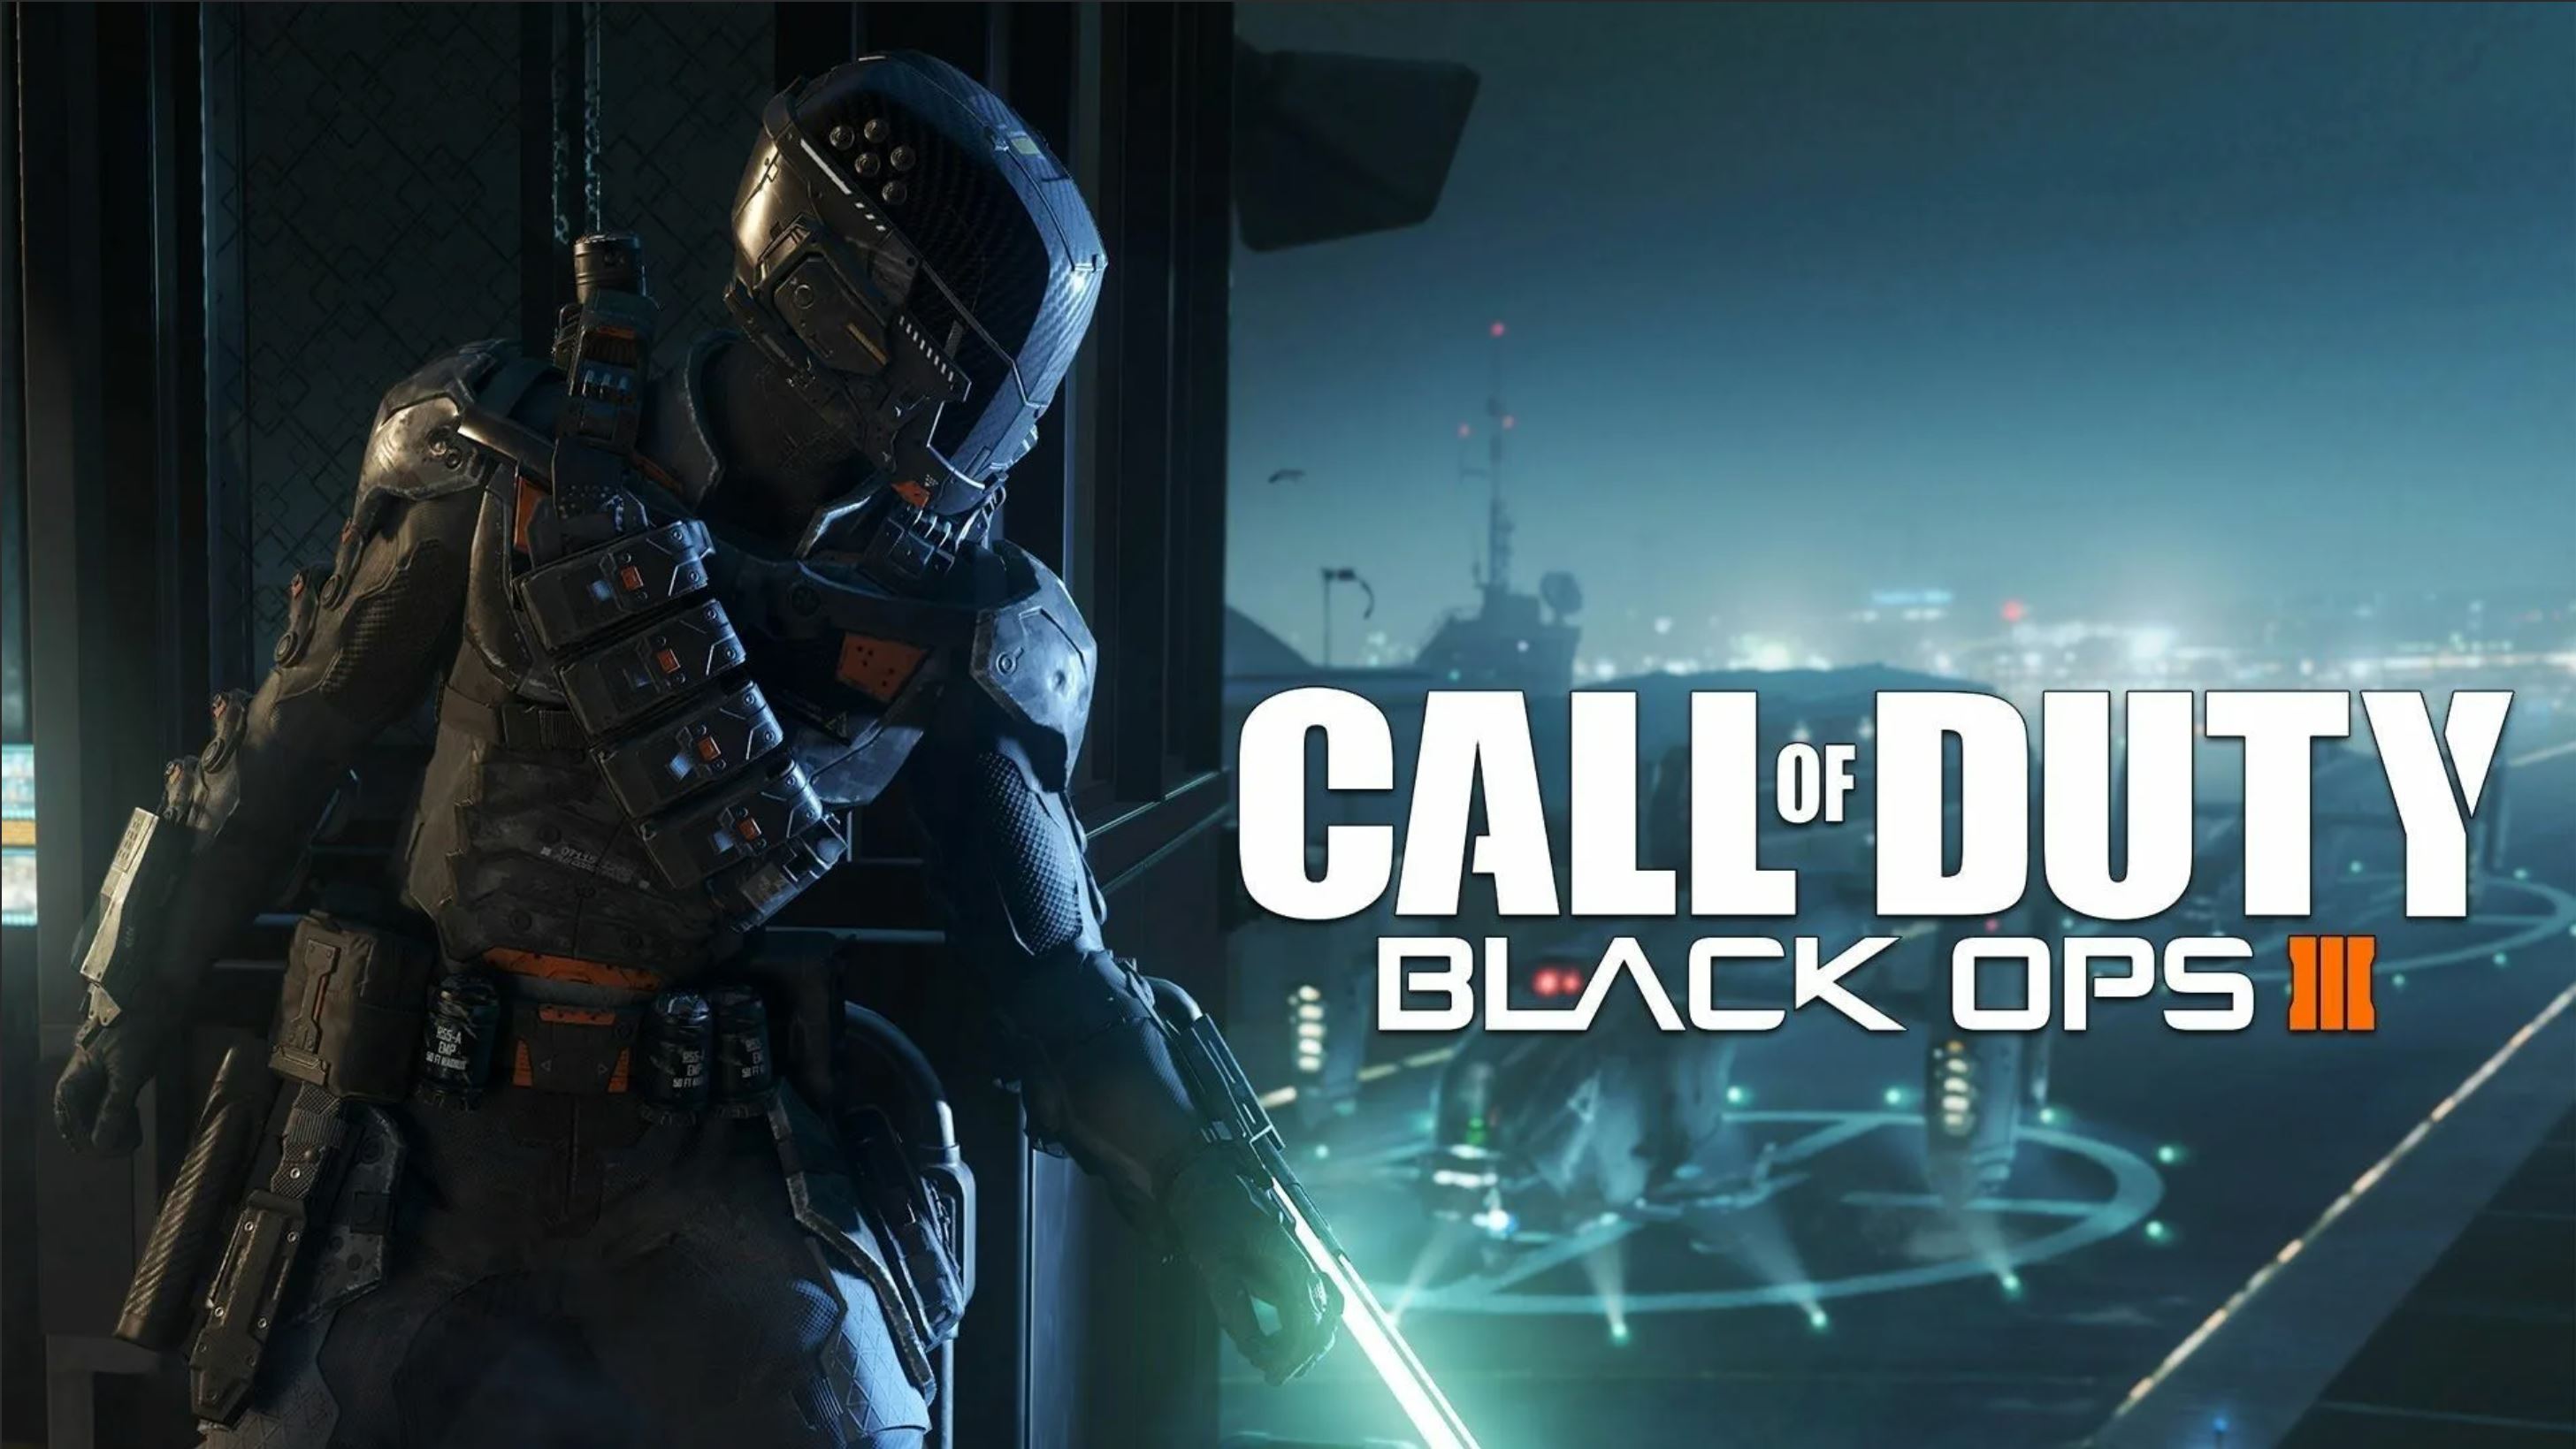 Кол оф дьюти опс 3. КОЛДА Блэк ОПС 3. Call of Duty Black ops 3 обои. Black ops 3 Постер. Call of Duty: Black ops 3 - Digital Deluxe Edition.